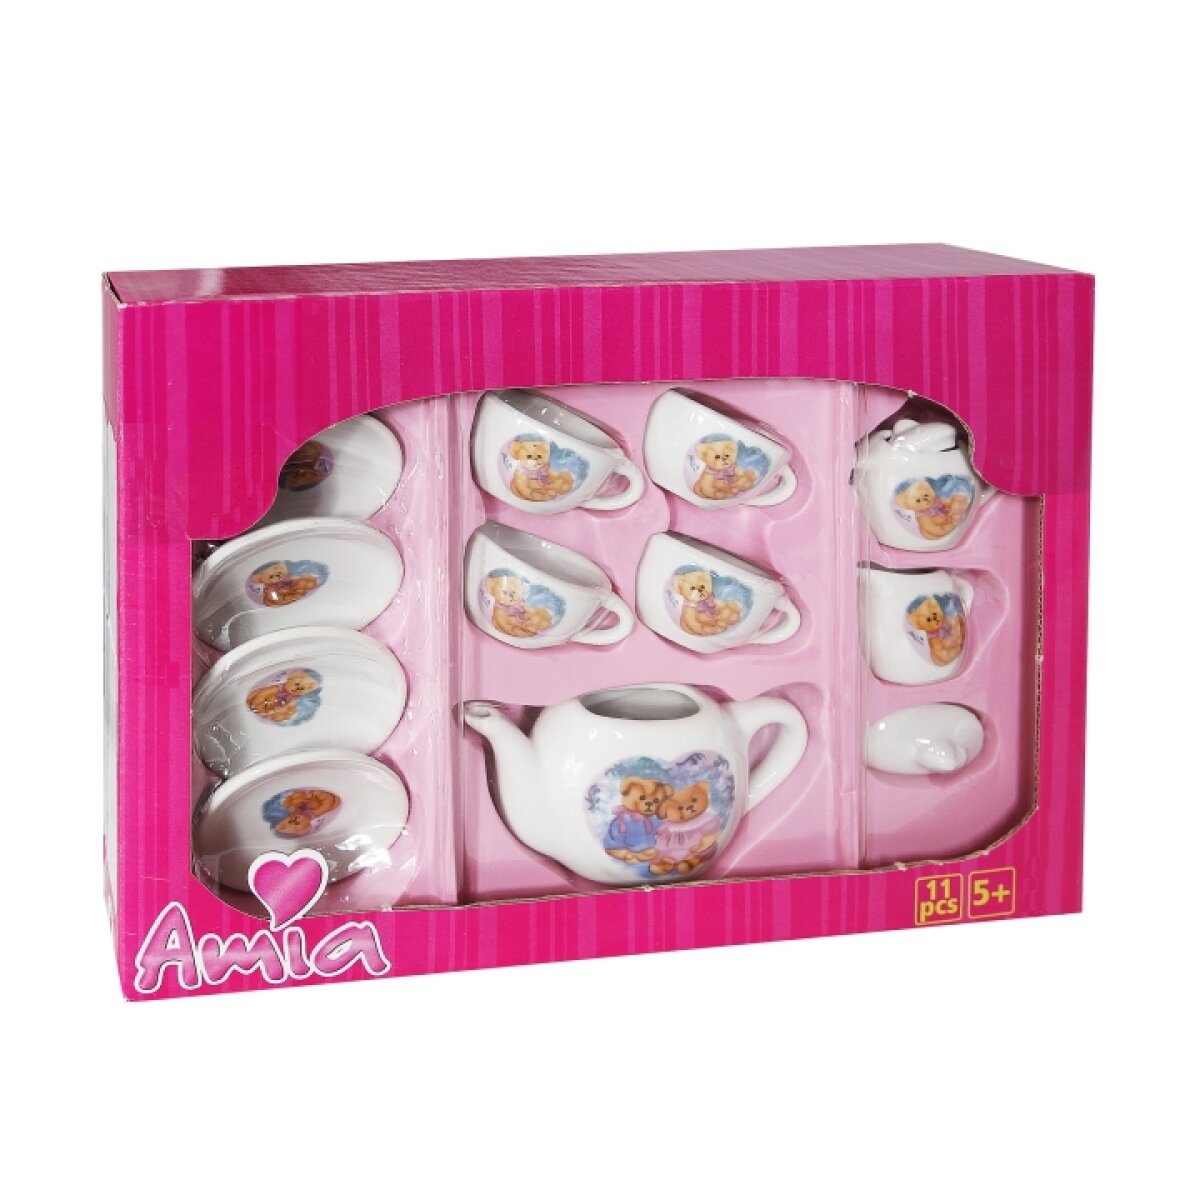 Amia Spiel-Tee-Service aus Porzellan 11-teilig Spielzeug Spielgeschirr Puppen 